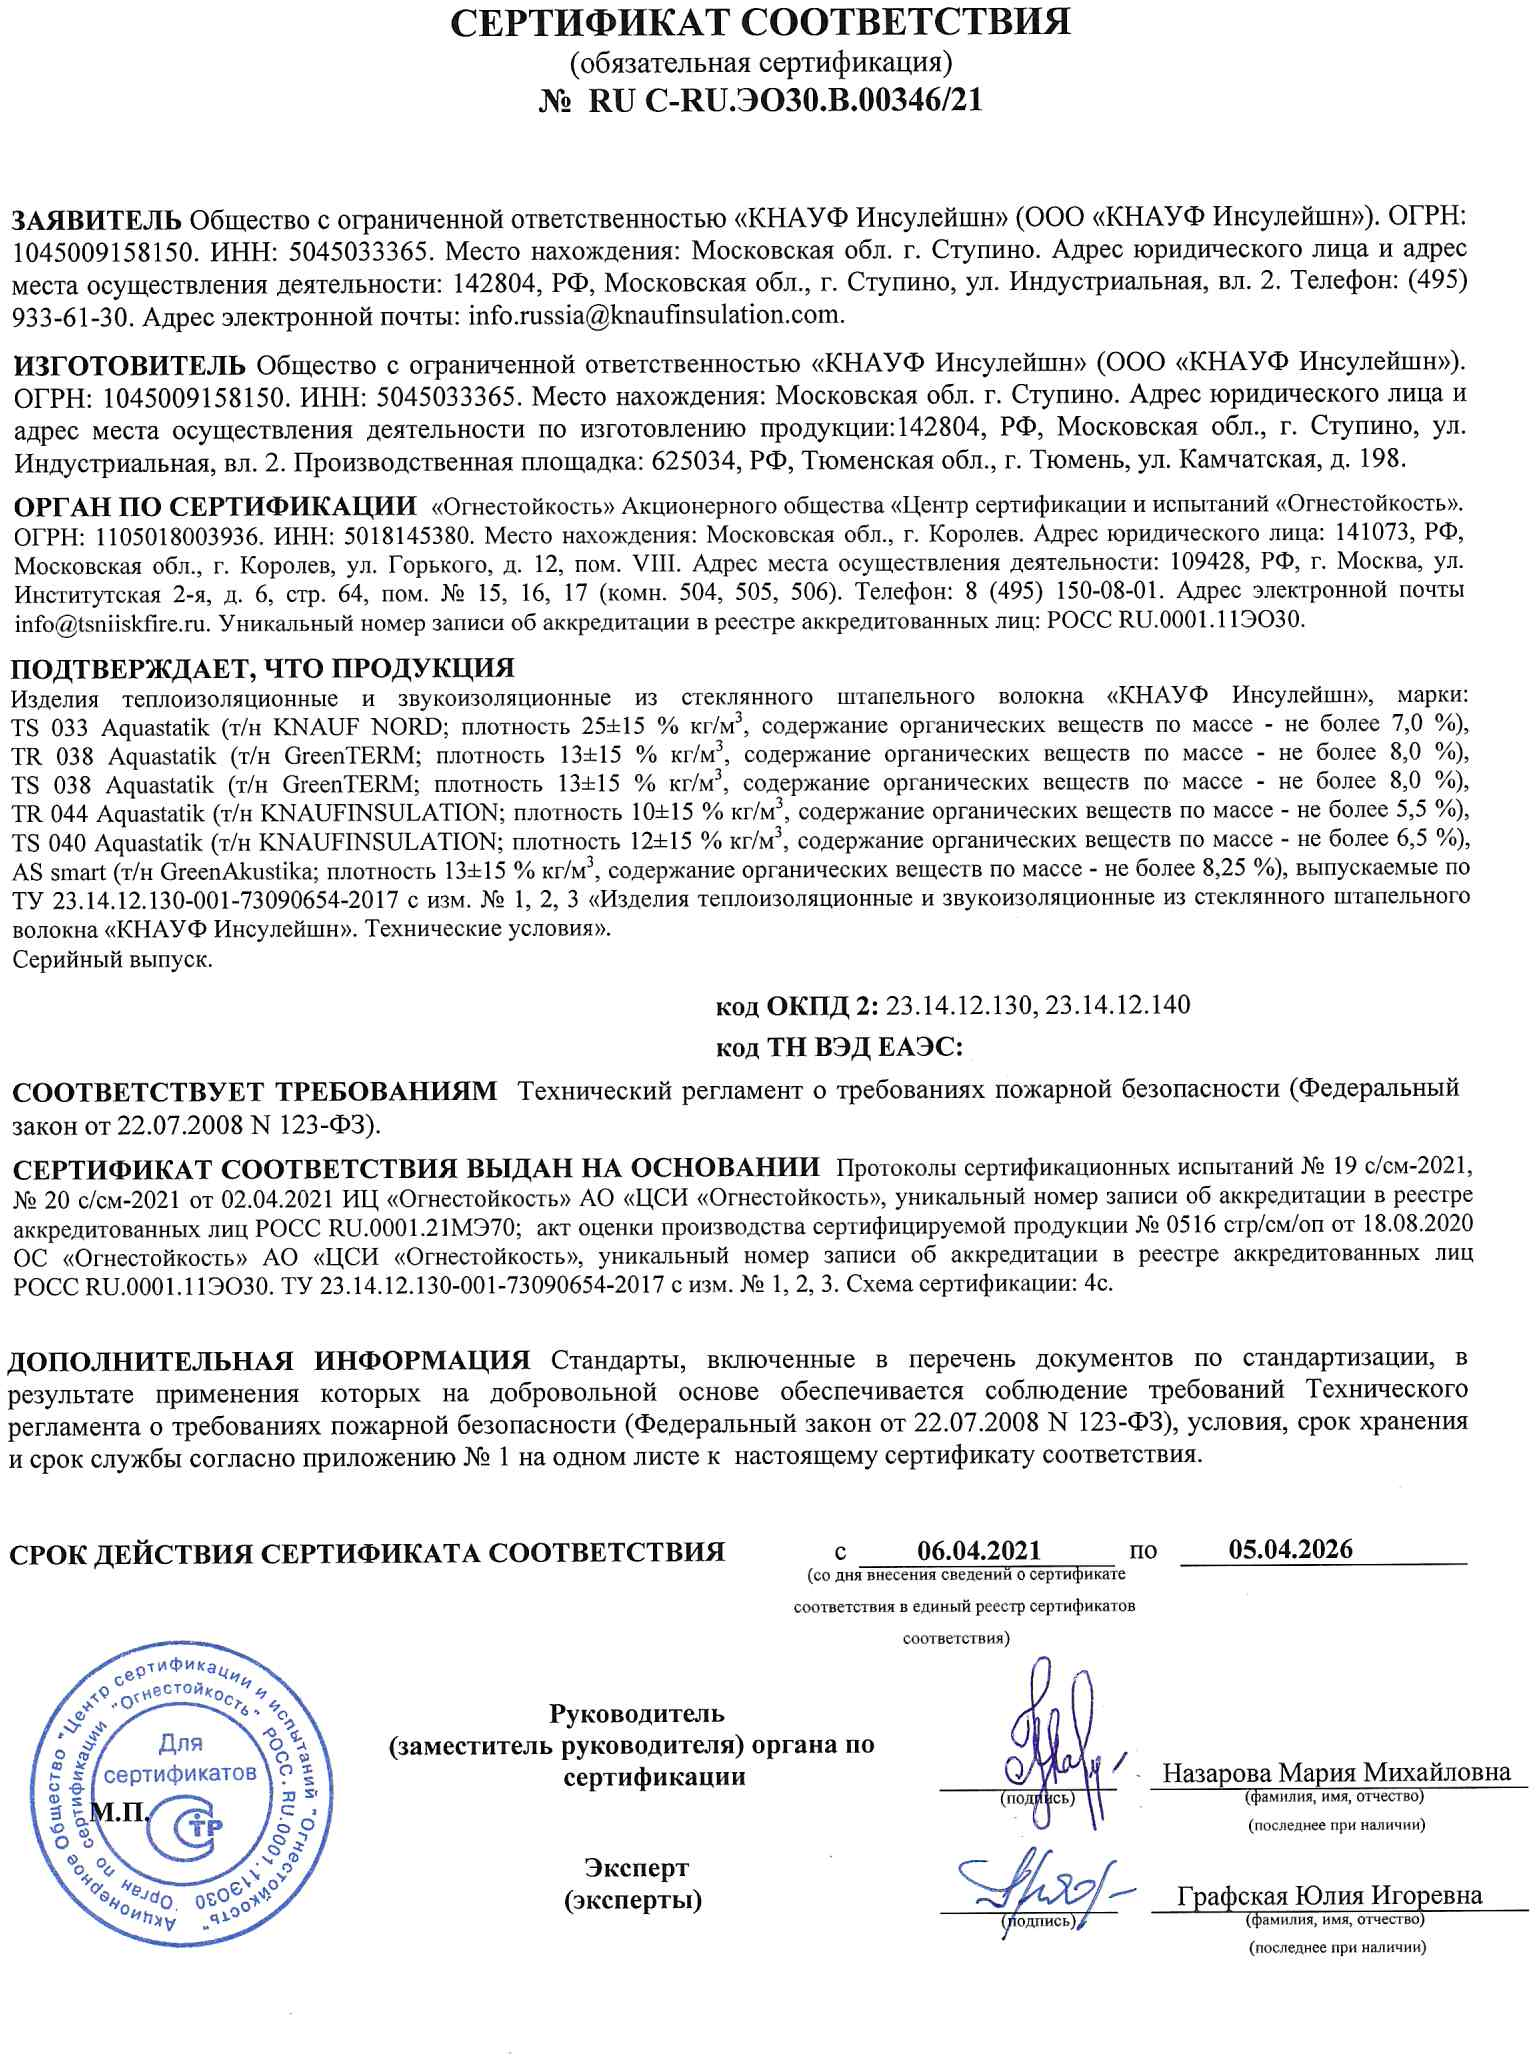 КНАУФ NORD: Сертификат пожарной безопасности